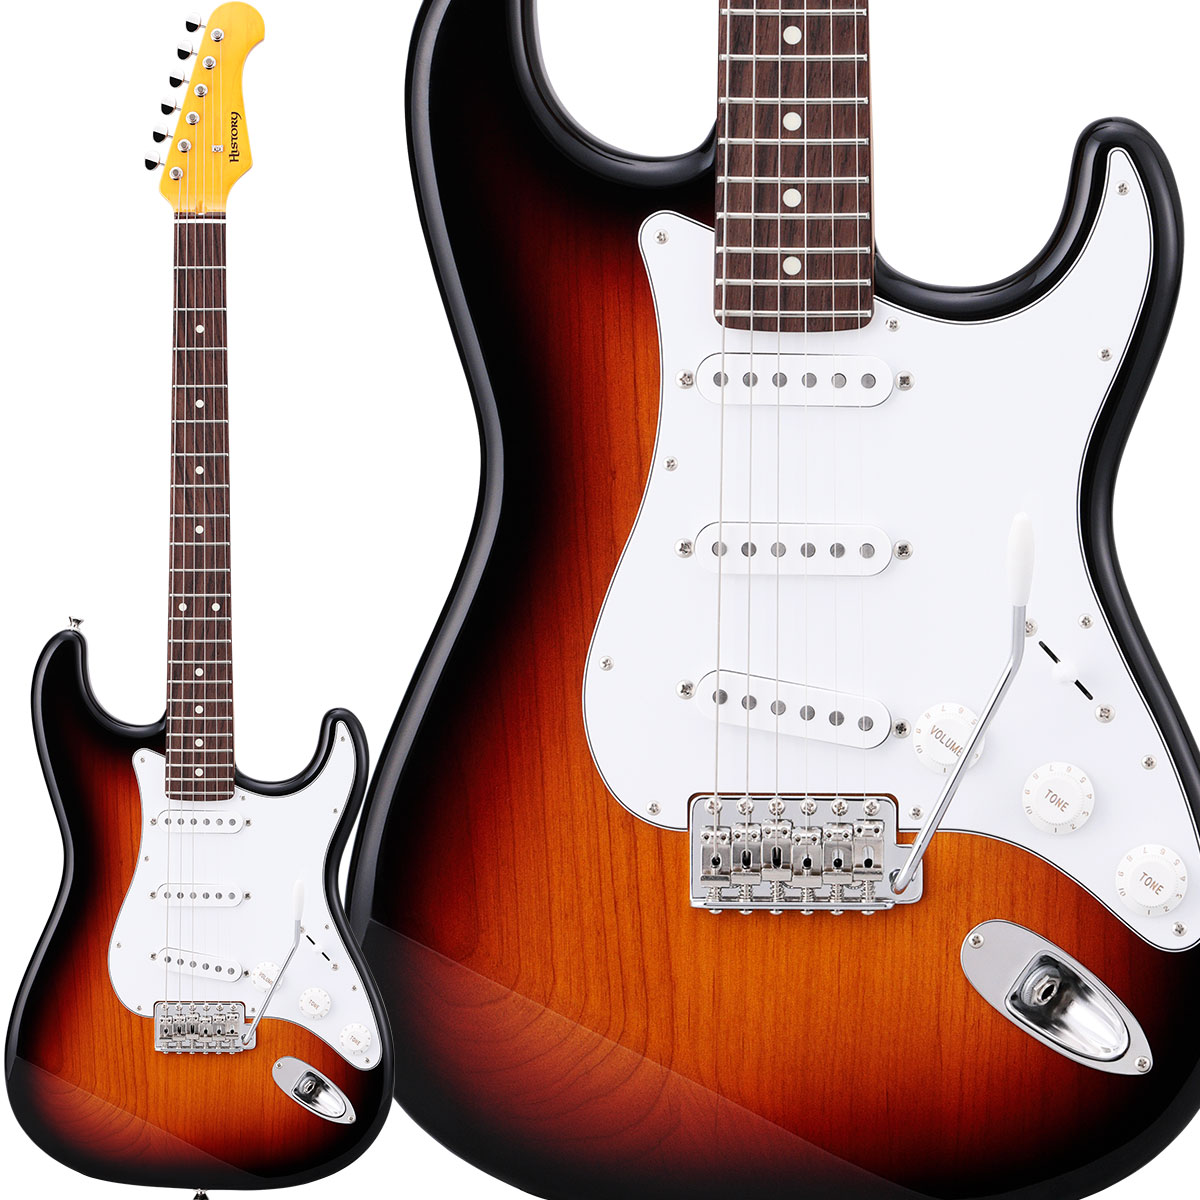 【純国産ギター】 HISTORY HST-Standard 3TS 3Tone Sunburst ハムバッカー切替可能 アルダーボディ エレキギター ストラトキャスター ヒストリー 3年保証 日本製 Standard series